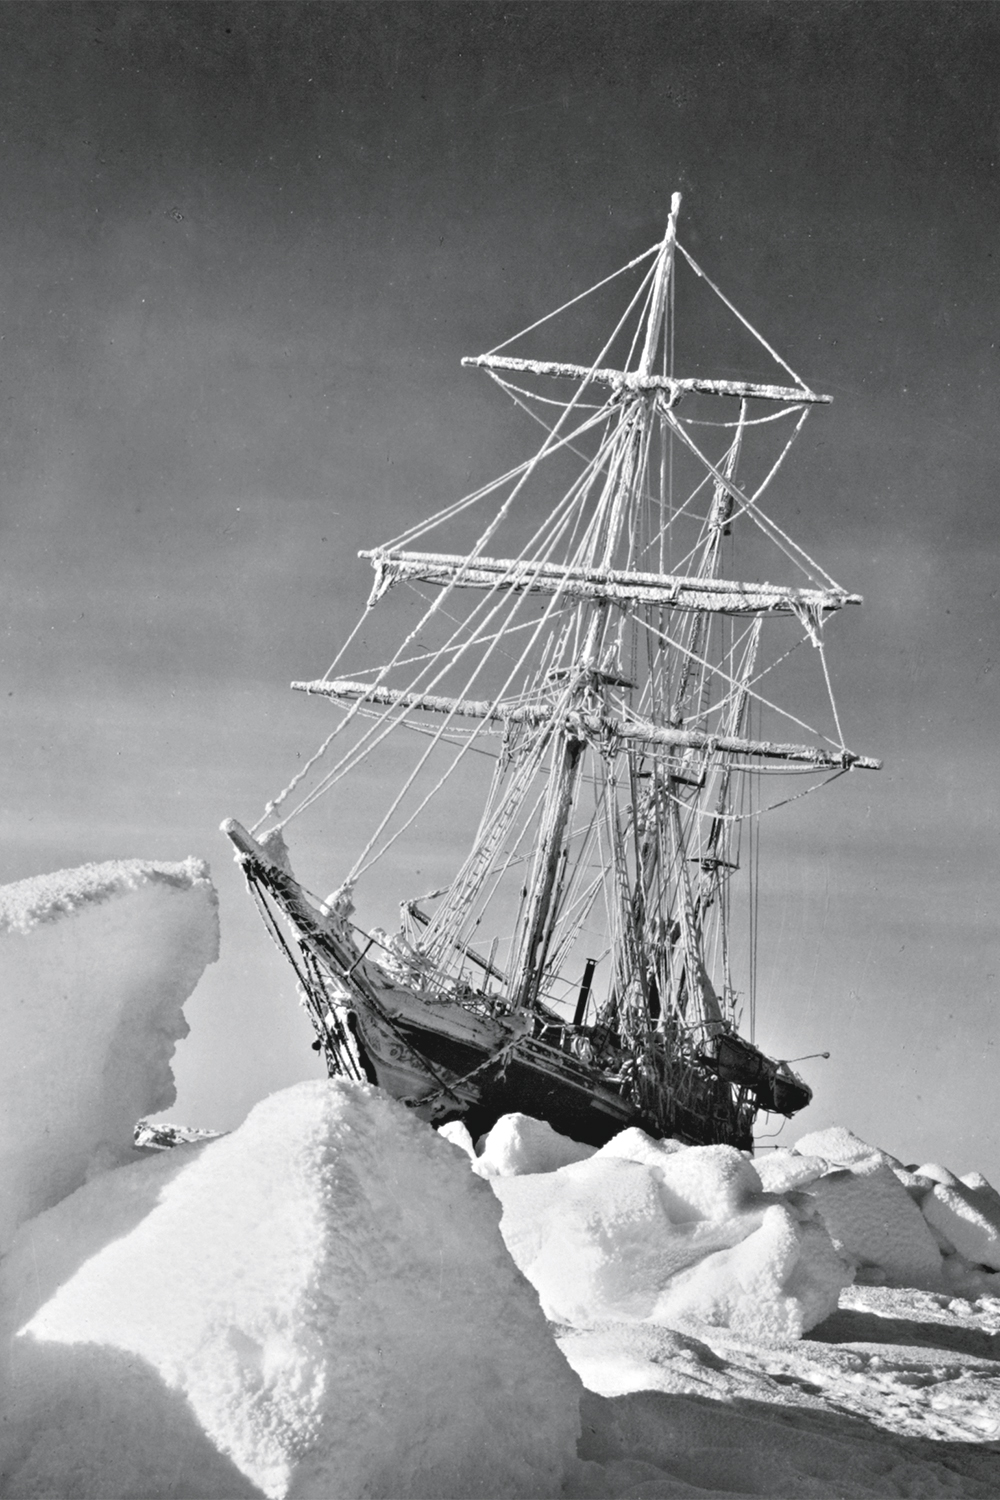 SEM SAÍDA - A embarcação presa no gelo: saga de sobrevivência e heroísmo inspira navegadores até hoje -